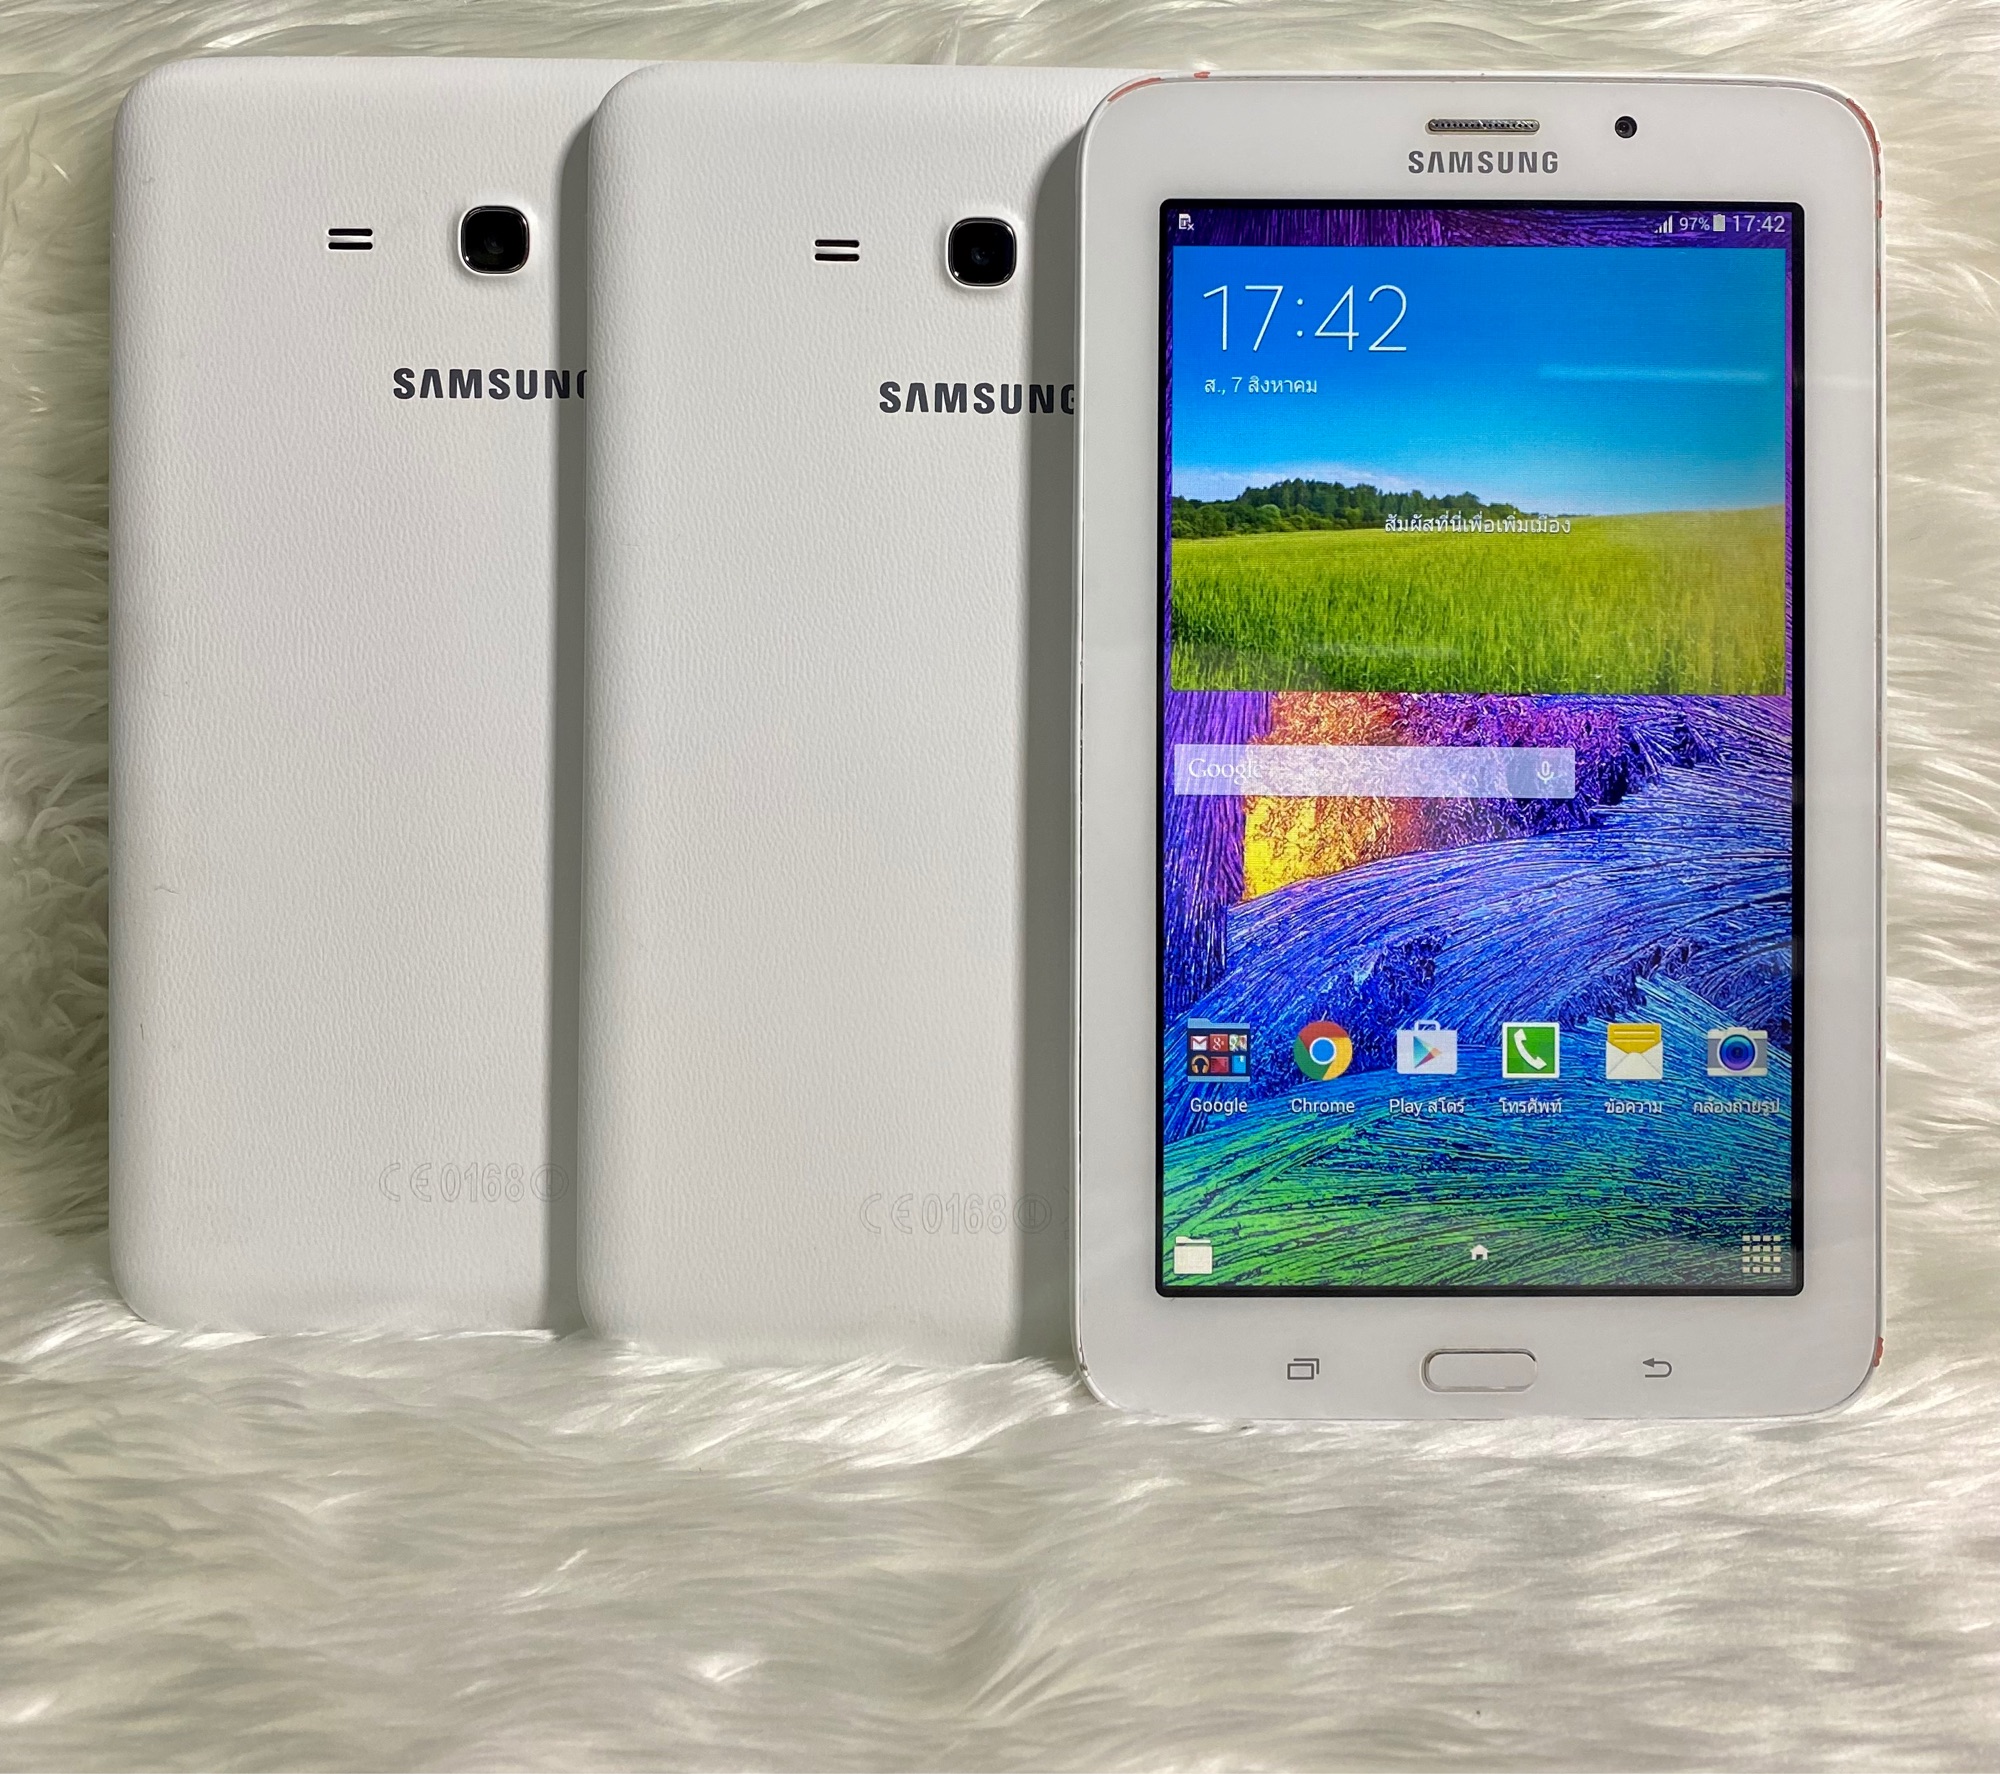 มุมมองเพิ่มเติมเกี่ยวกับ Samsung Galaxy Tab 3E แท็บเล็ตมือ-2พร้อมใช้งานเครื่อง​ไม่มีที่ปิดซิม(ฟรีชุดชาร์จ)